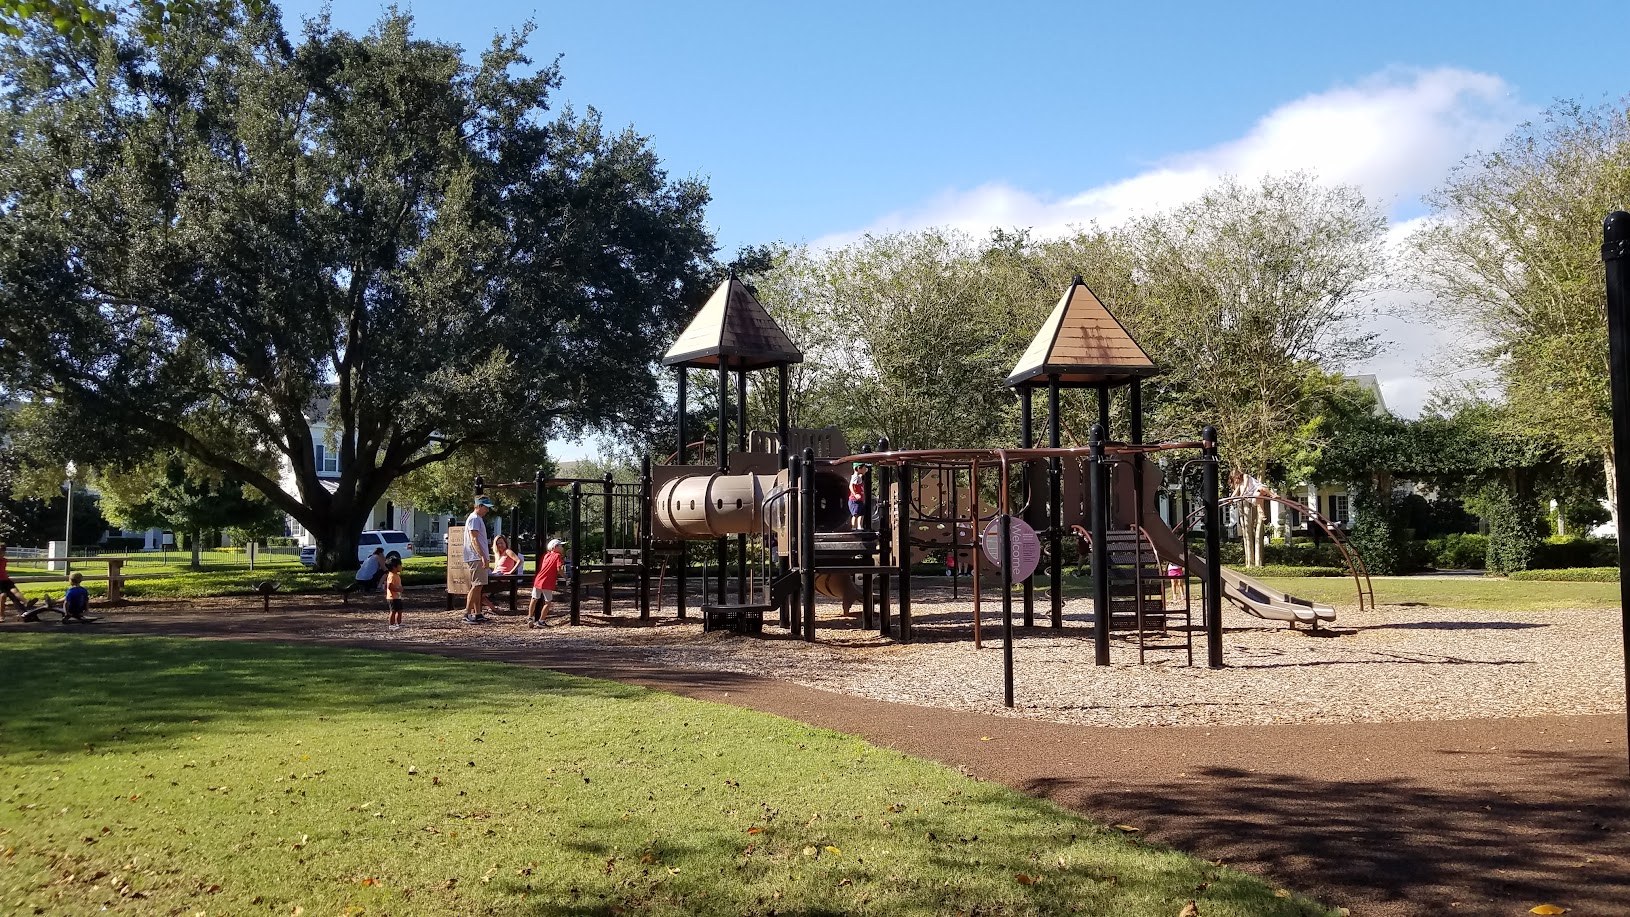 Union Park Playground